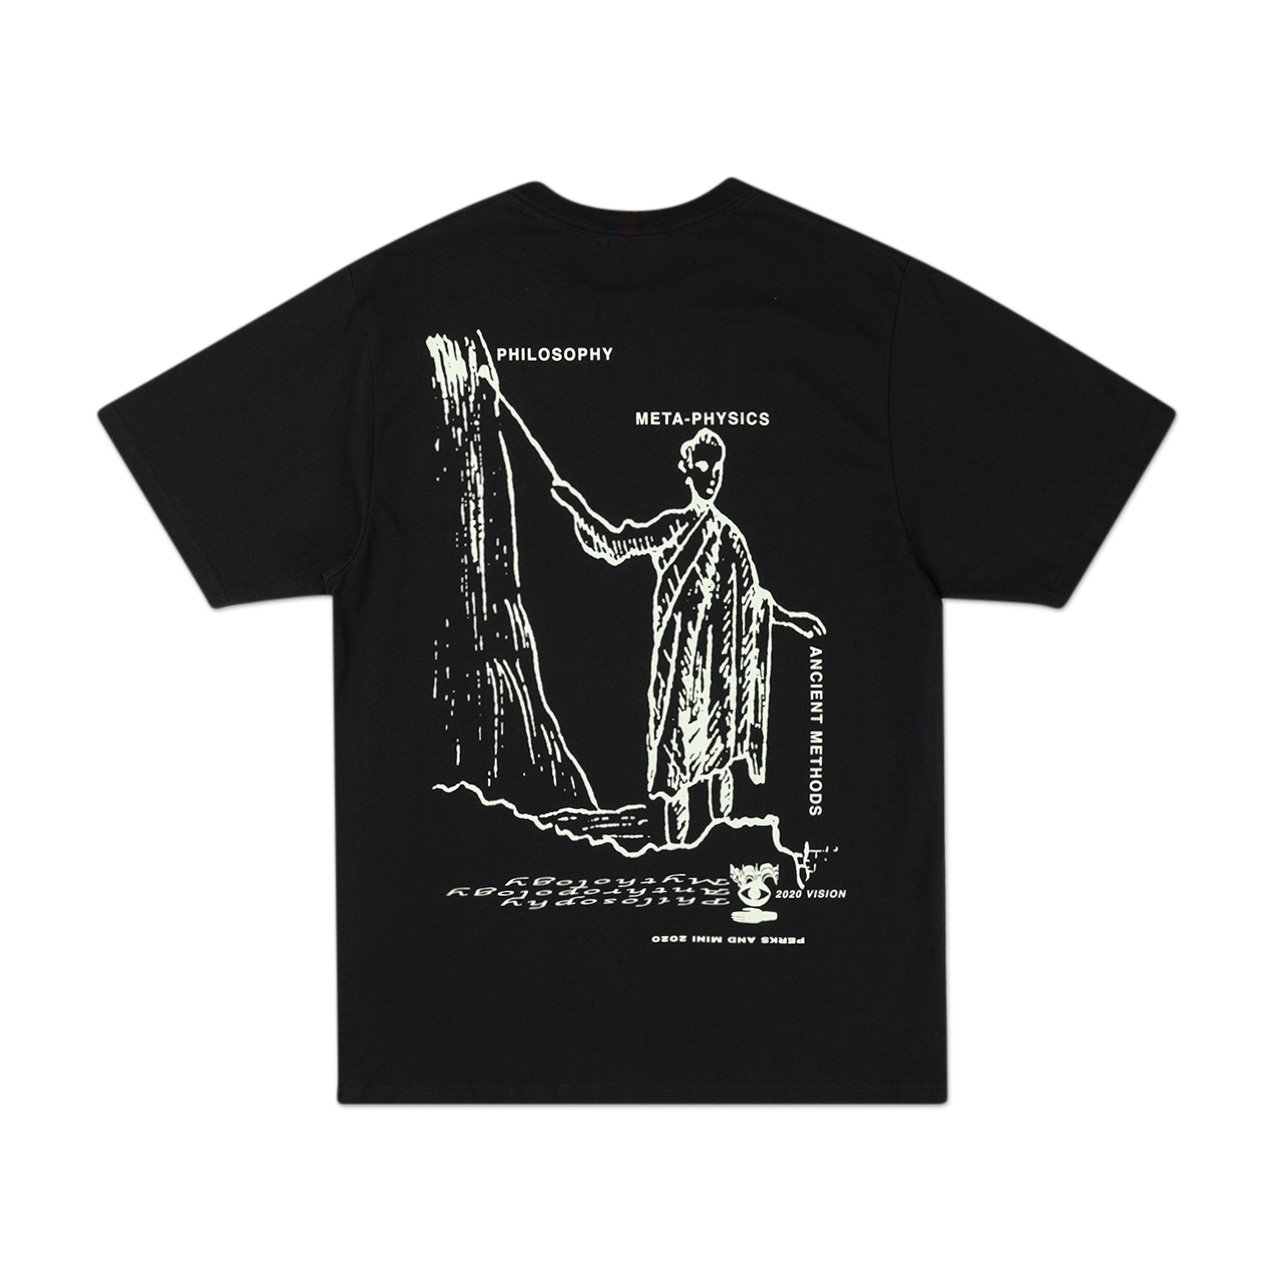 perks and mini version 1.2 s/s t-shirt (black) - 1390/c-b - a.plus - Image - 2